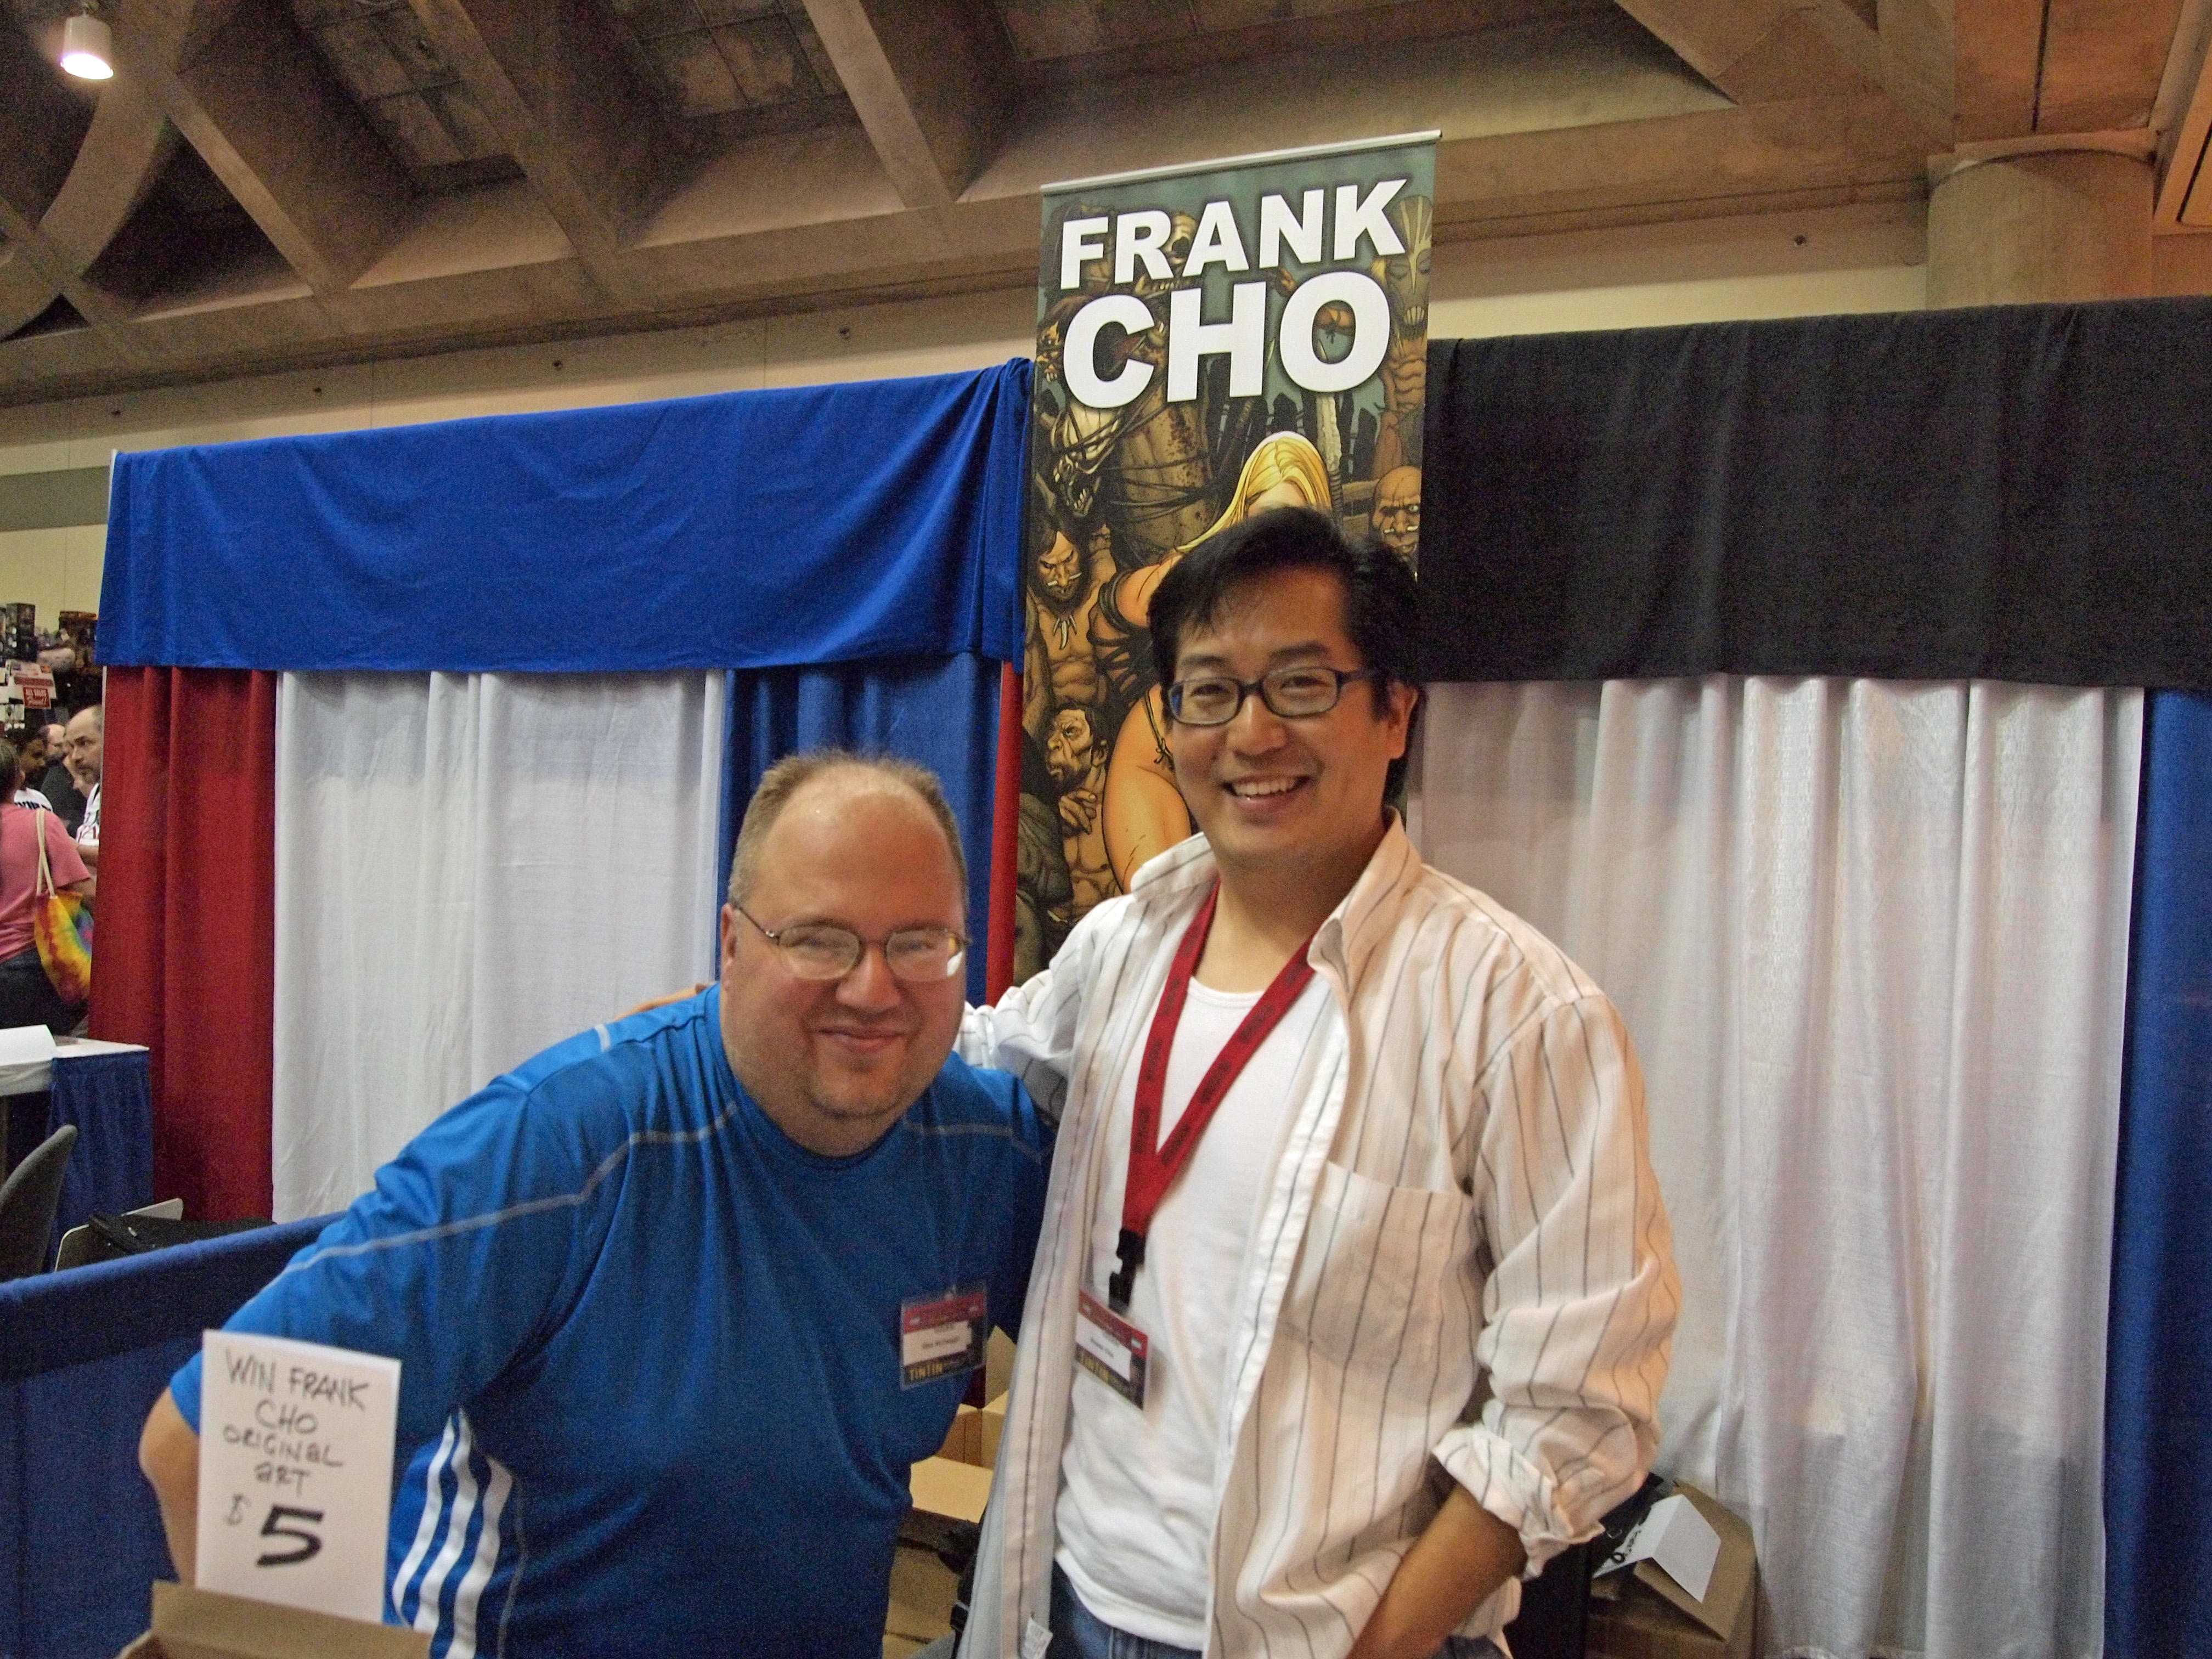 Frank Cho